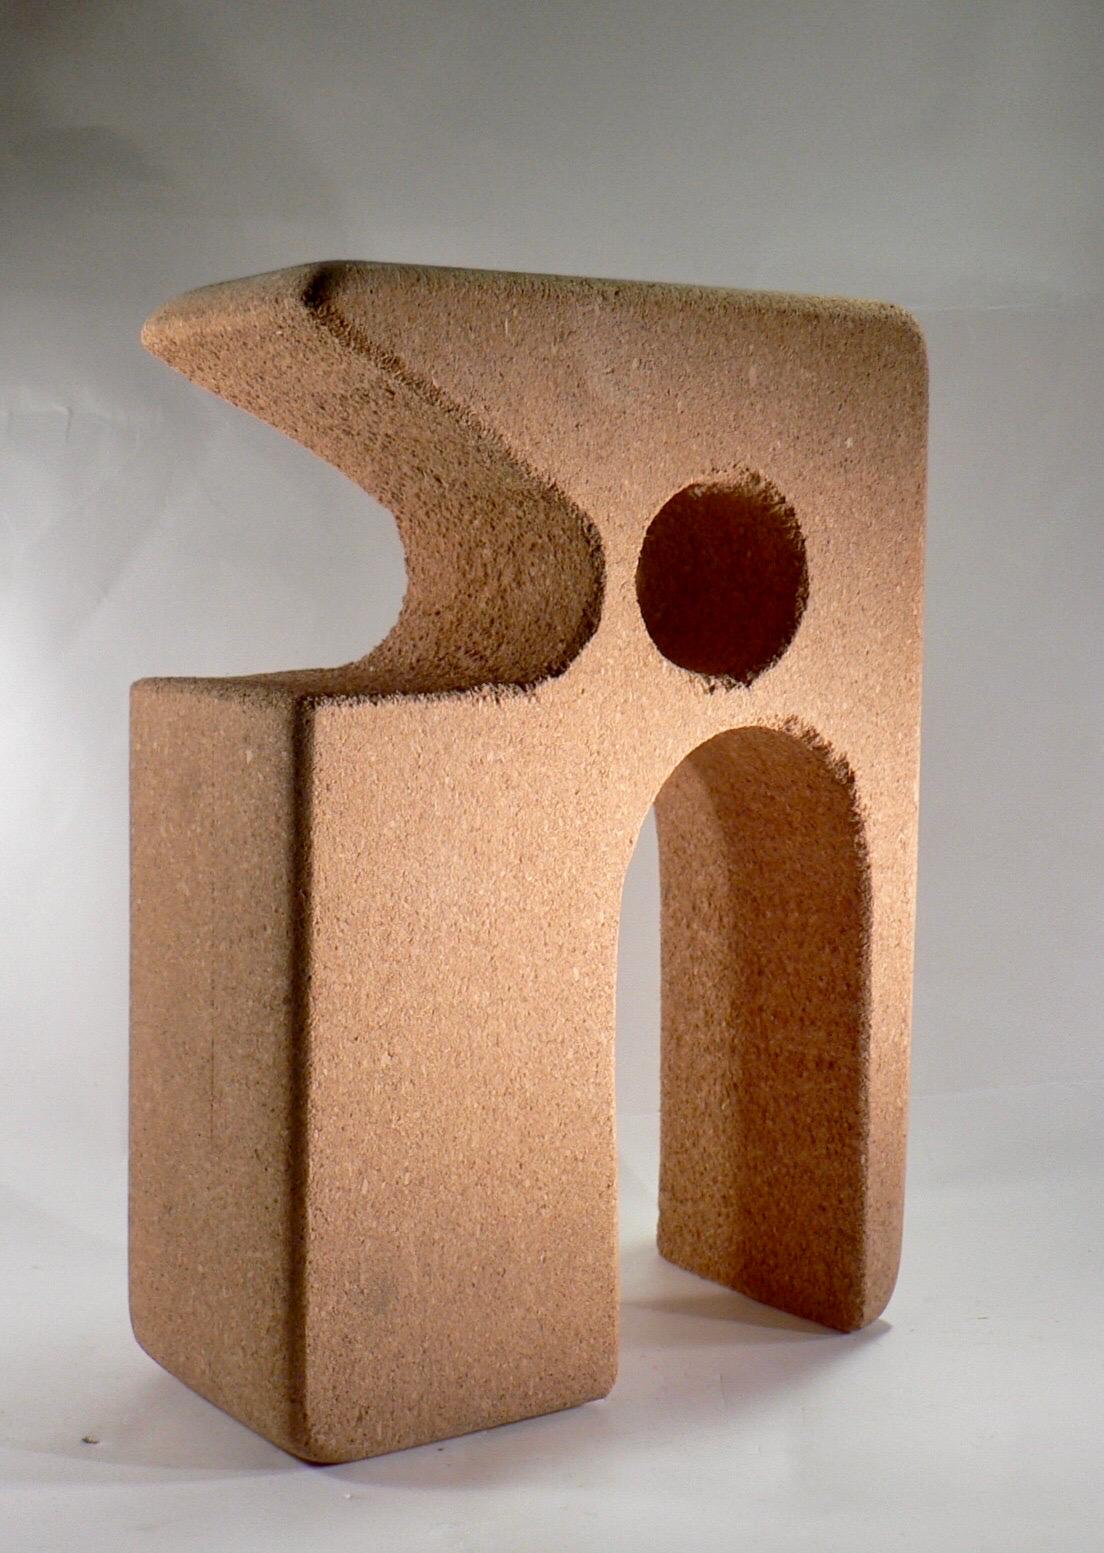 Eine abstrakte, aus Kork geschnitzte Skulptur - Frankreich - 2010

Französisches Werk von 2010, Korkstudie für die Steinlampen von Michel Bonhomme.